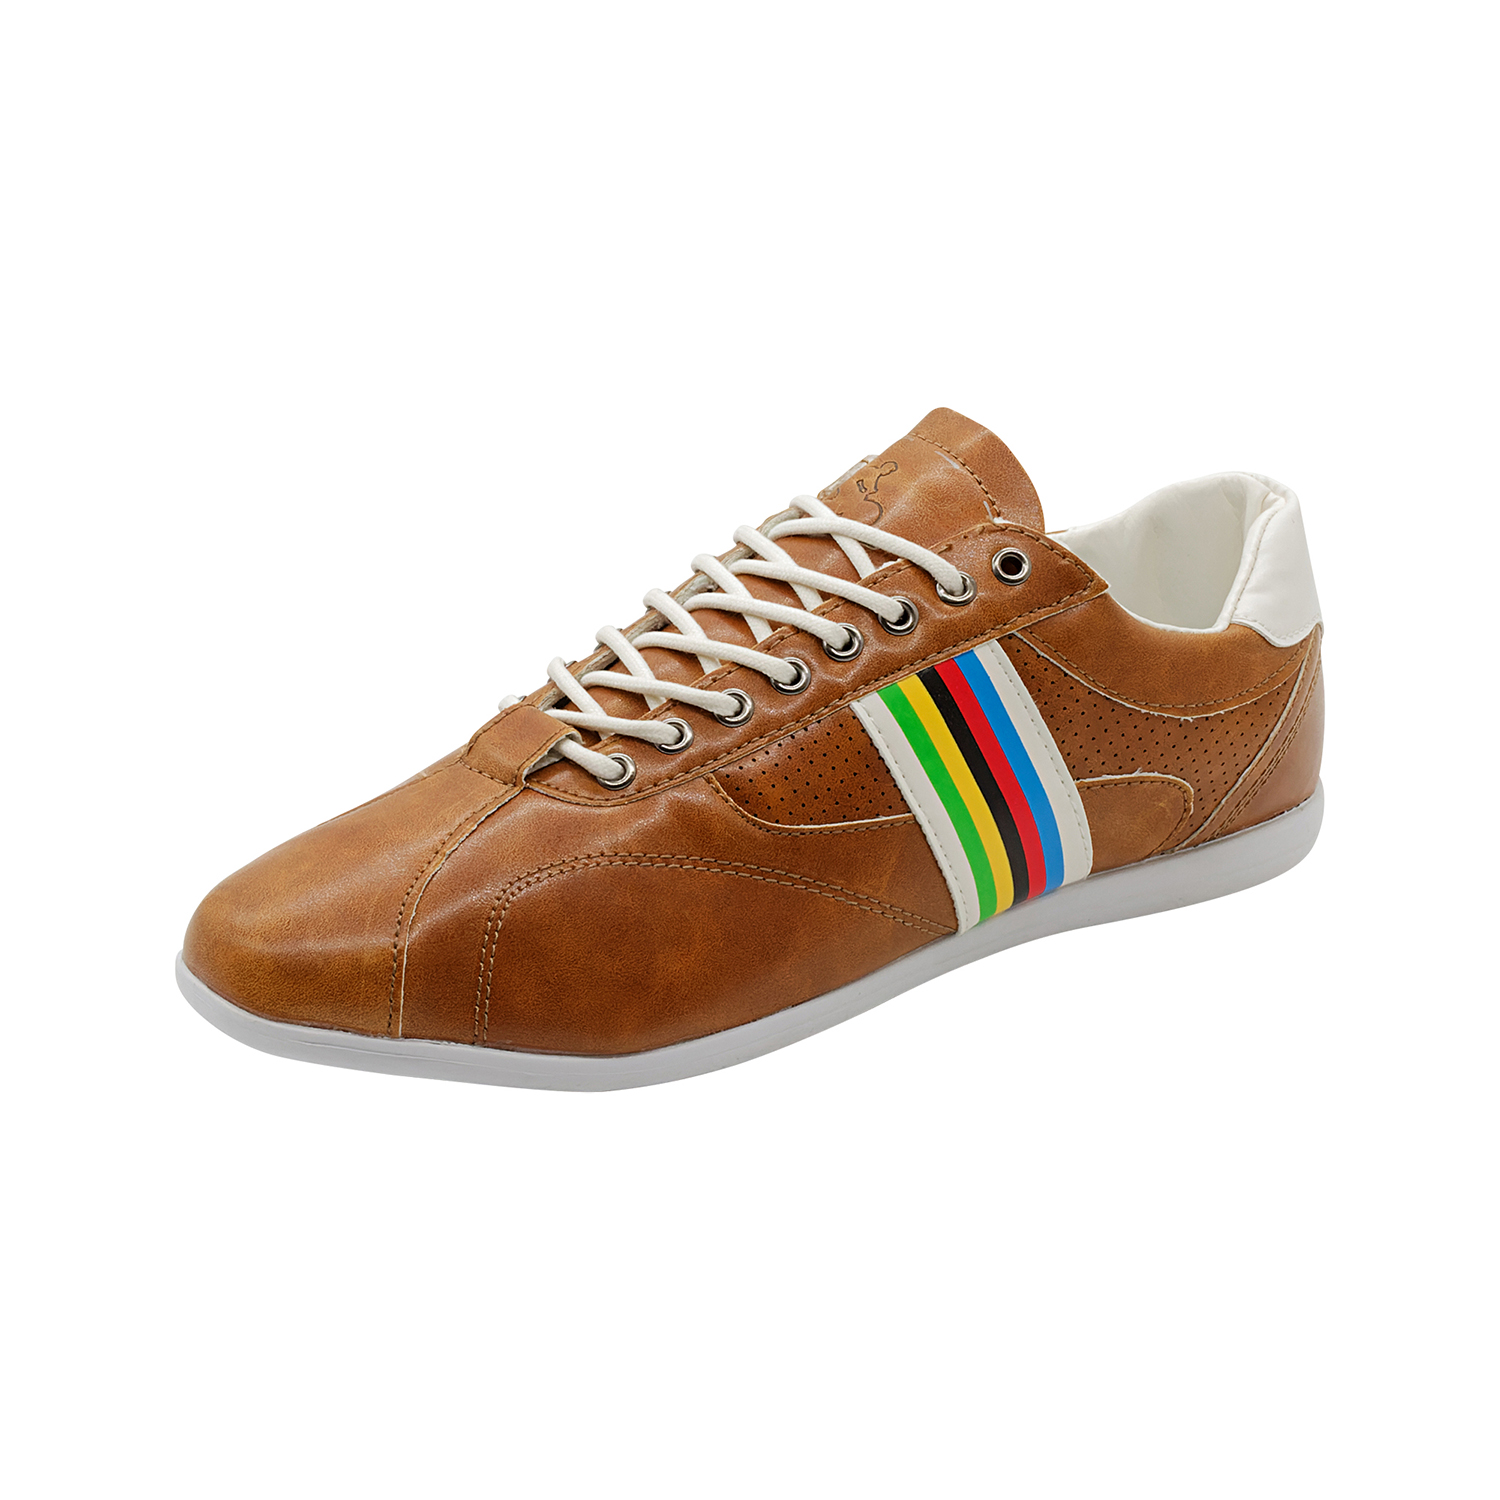 Freizeit-Schuh Vintage Gr. 41 in Braun/Weiß/Multicolor